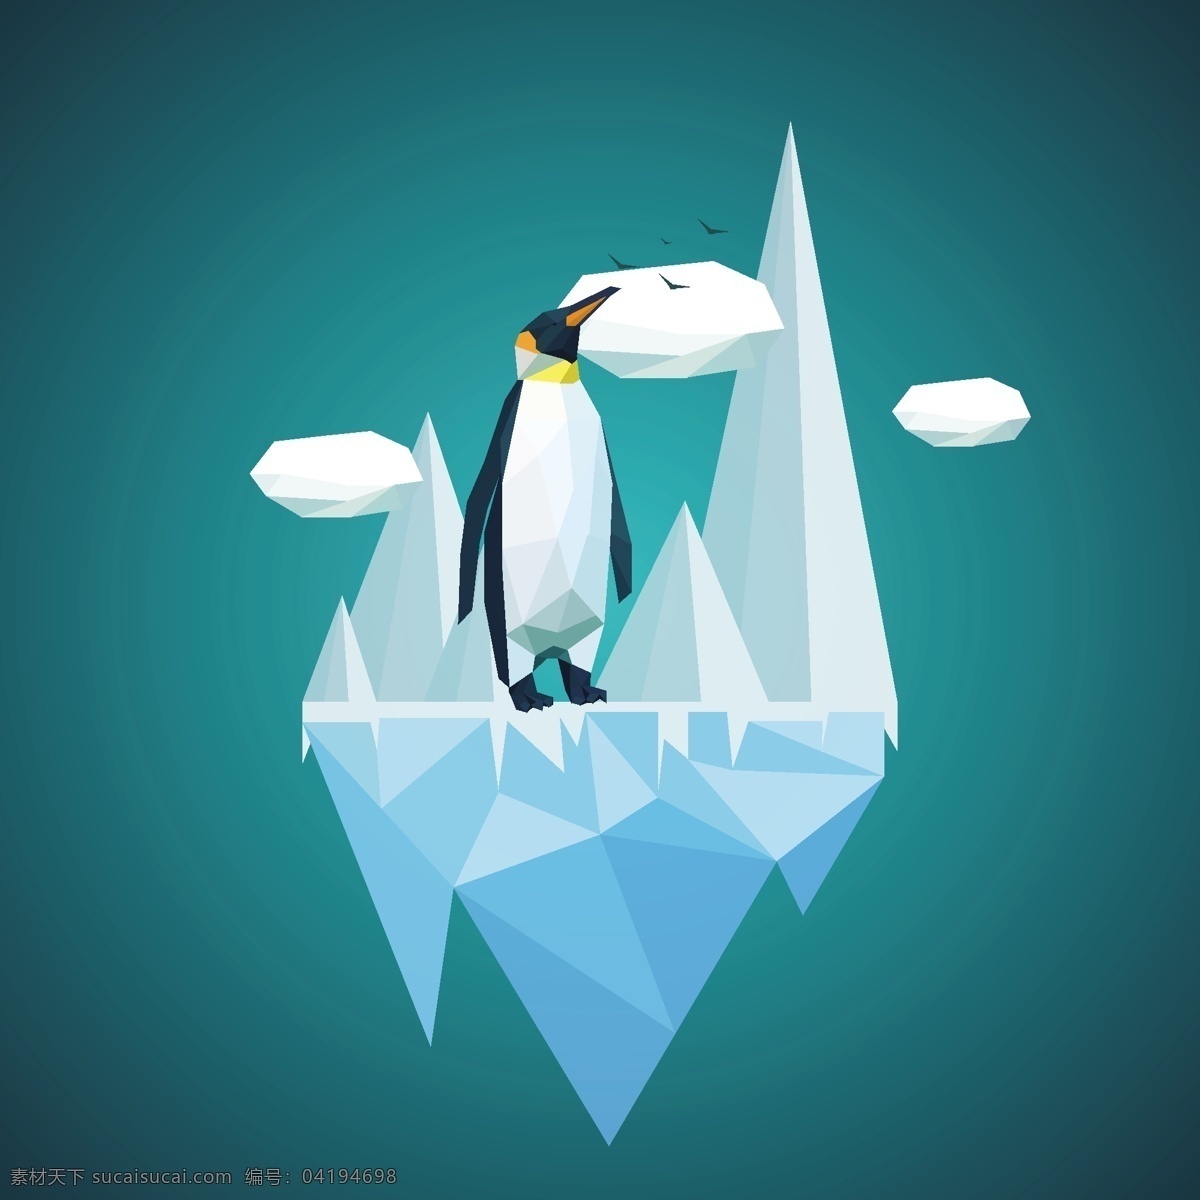 创意 企鹅 冰山 背景 图 广告背景 广告 背景素材 背景图 蓝色背景 南极 动物 可爱 蓝色底纹 背景底纹 底纹